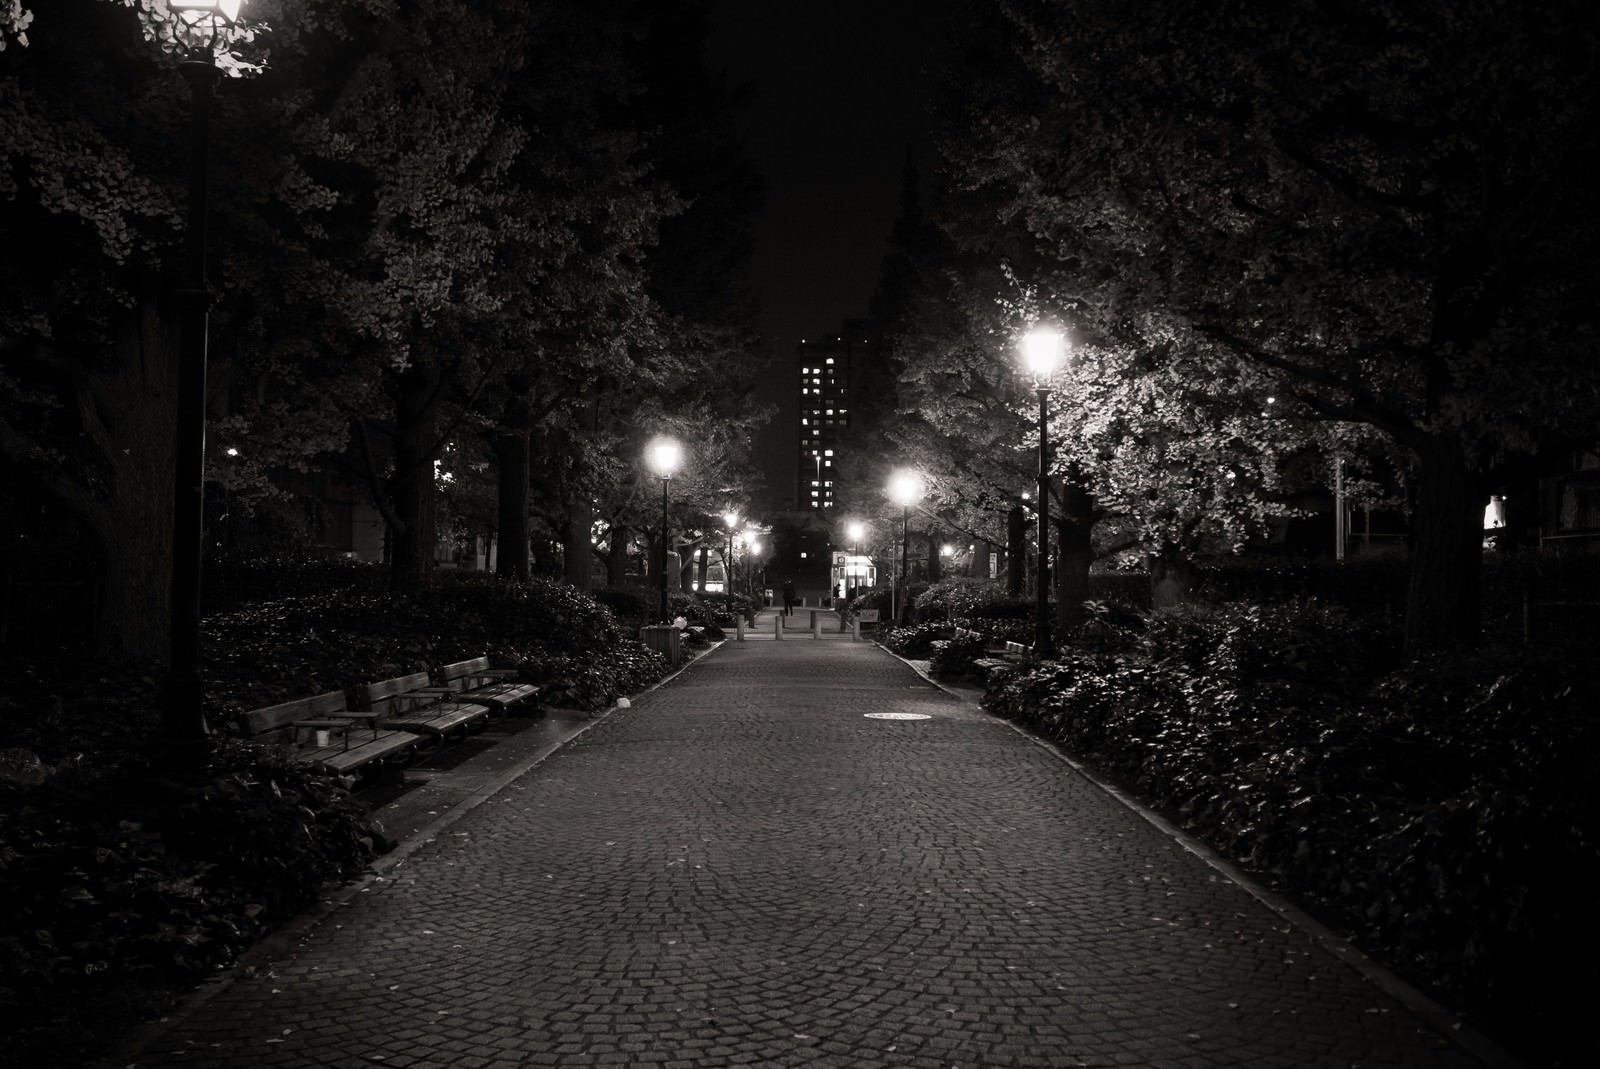 「街灯のあかりと歩道」の写真